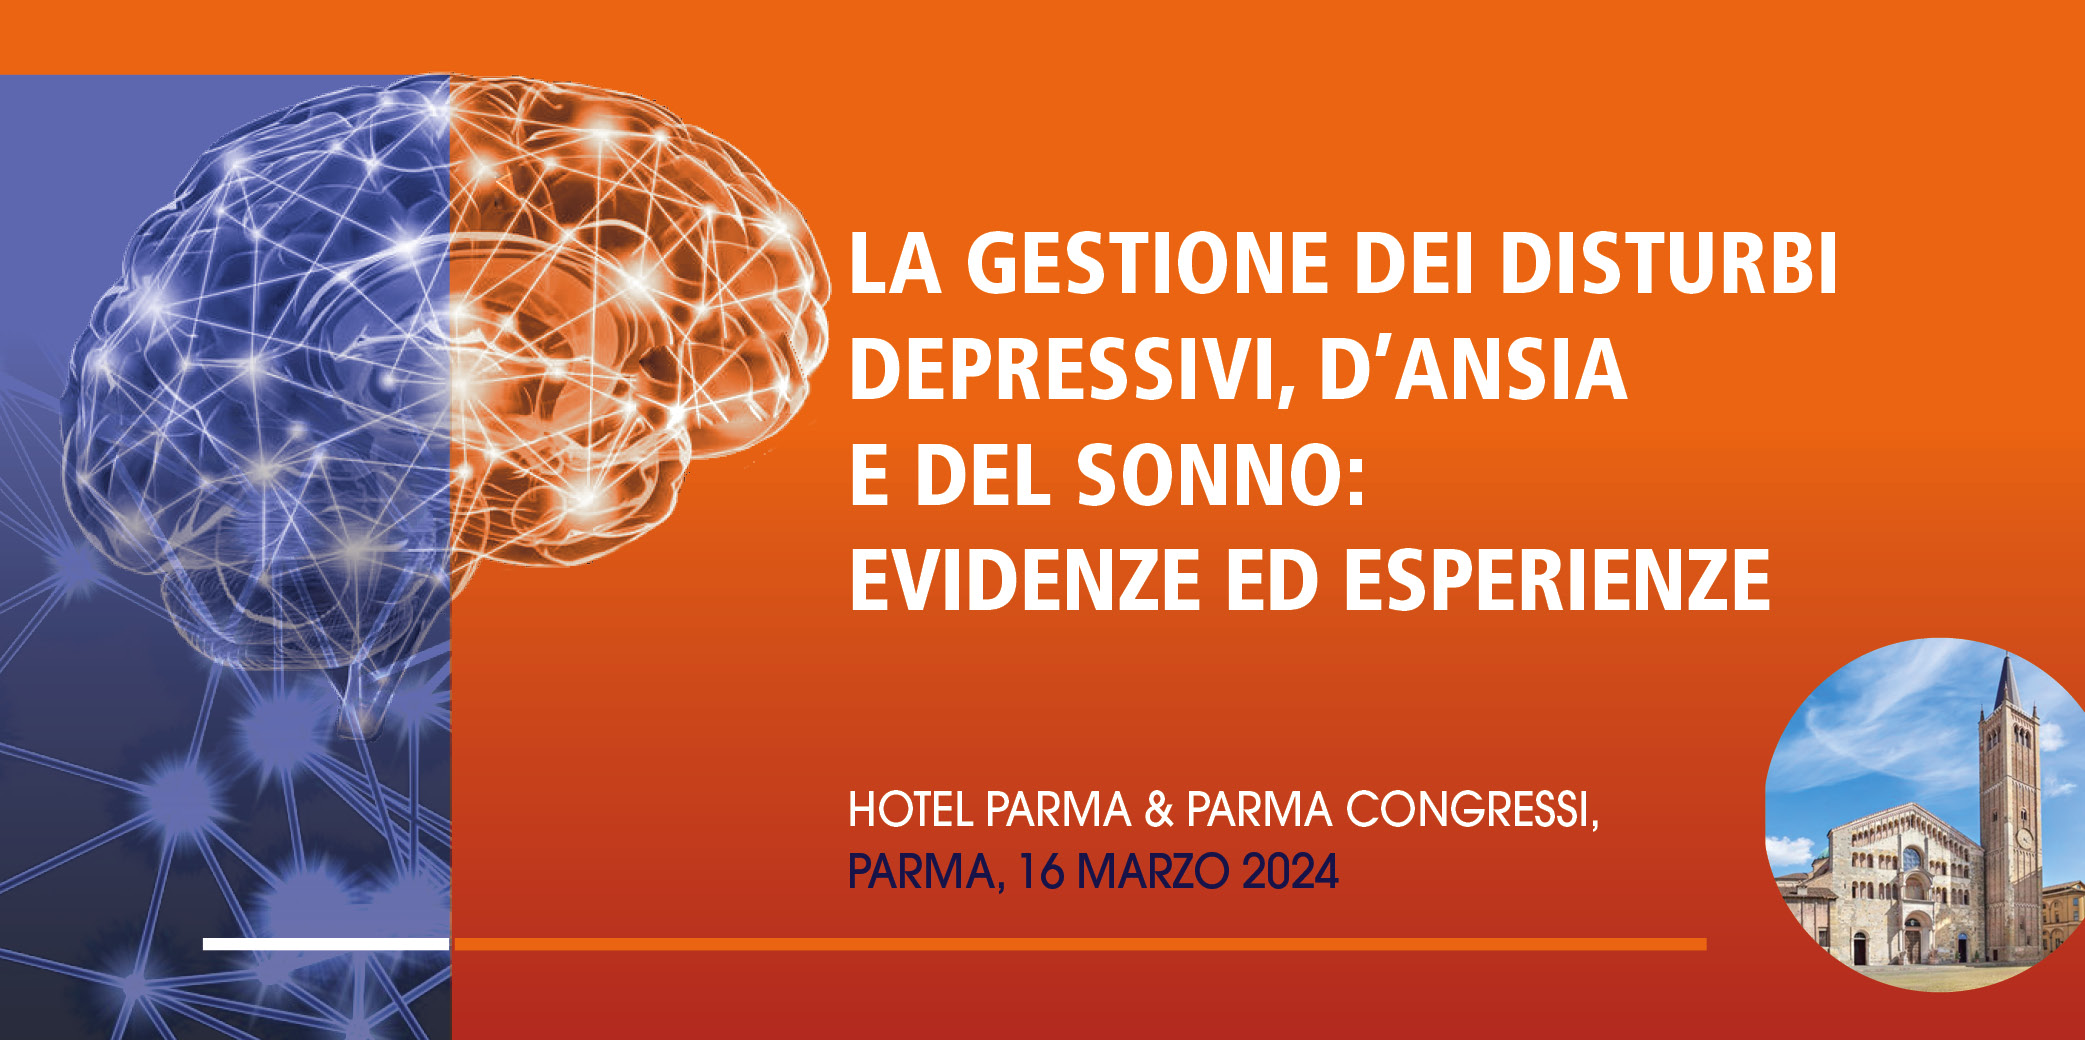 La gestione dei disturbi depressivi, d’ansia e del sonno: evidenze ed esperienze – Parma, 16 Marzo 2024